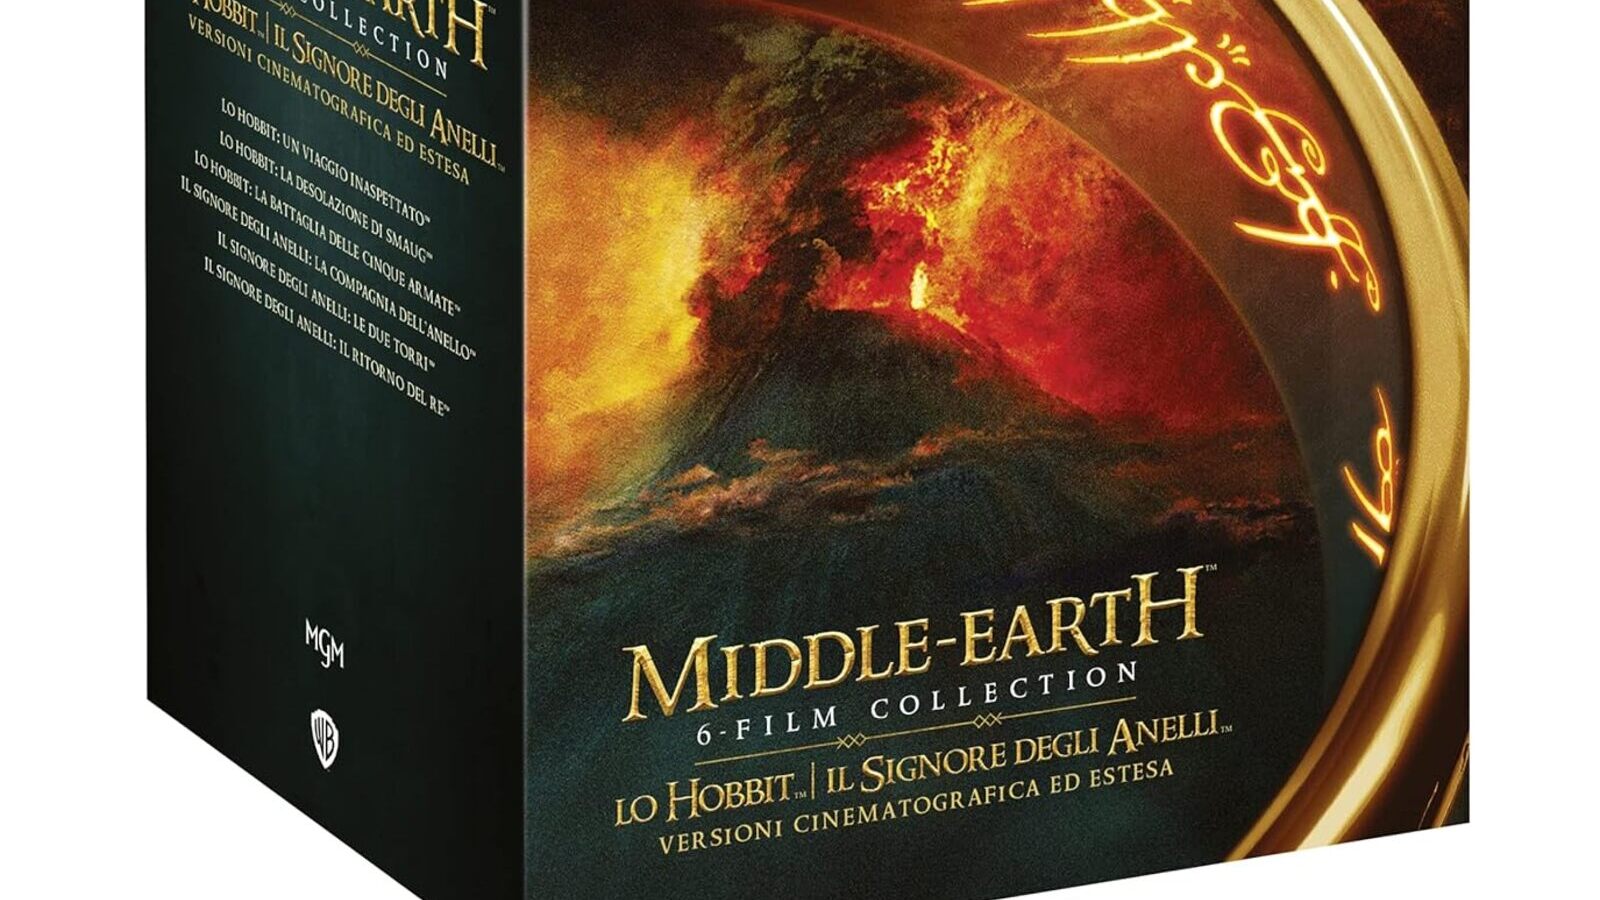 Il signore degli anelli: la Middle Earth Vanilla Edition (4K Ultra HD + Blu-Ray) è in sconto su Amazon